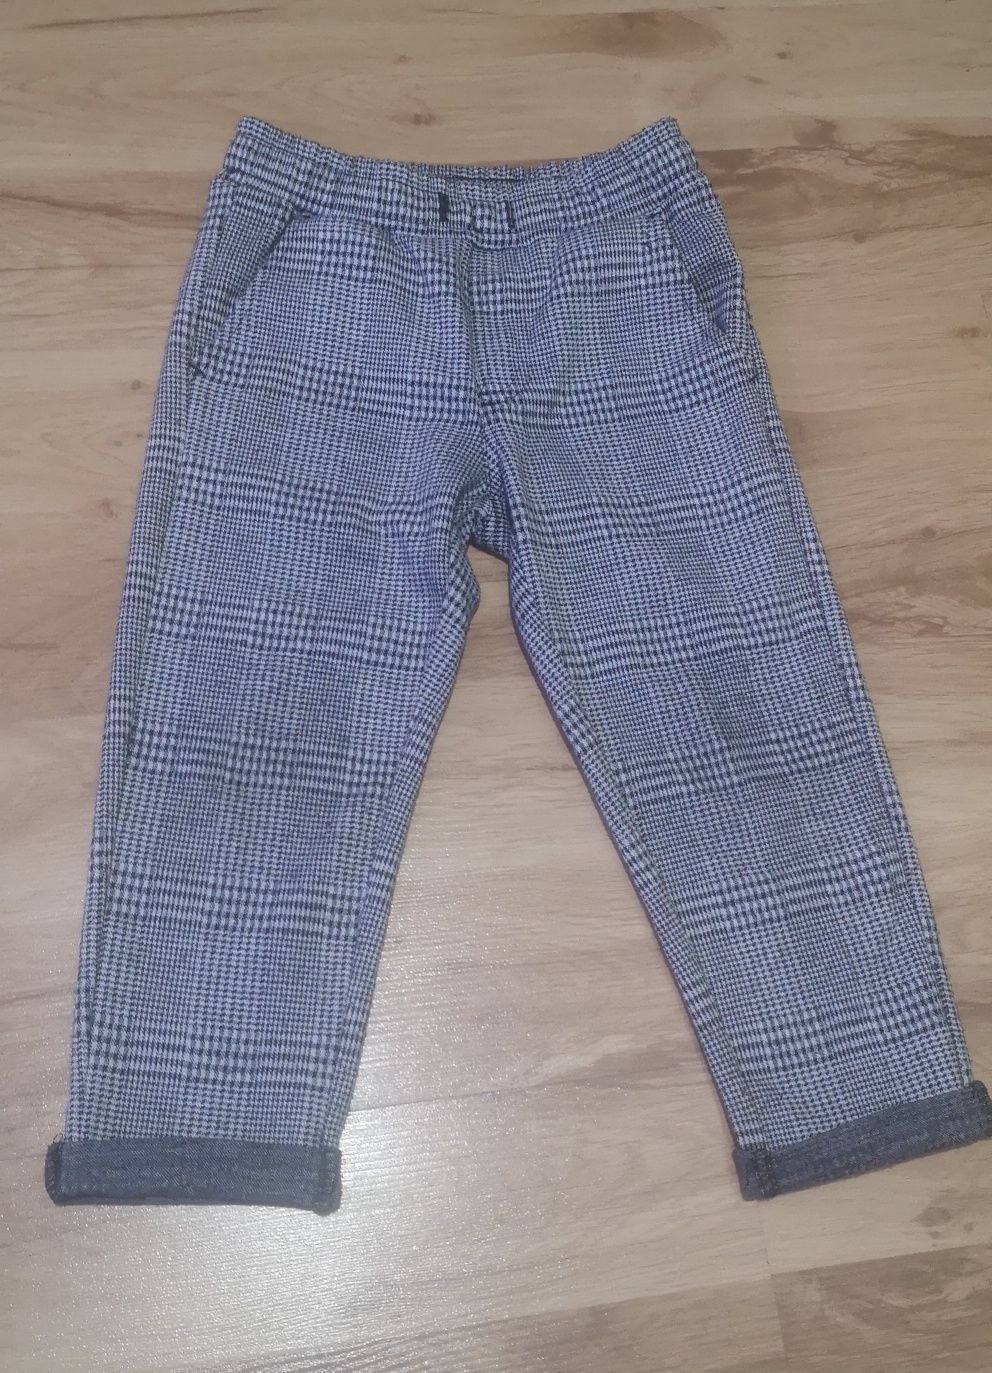 Spodnie materiałowe dla chłopca w kratkę Kappahl roz. 98